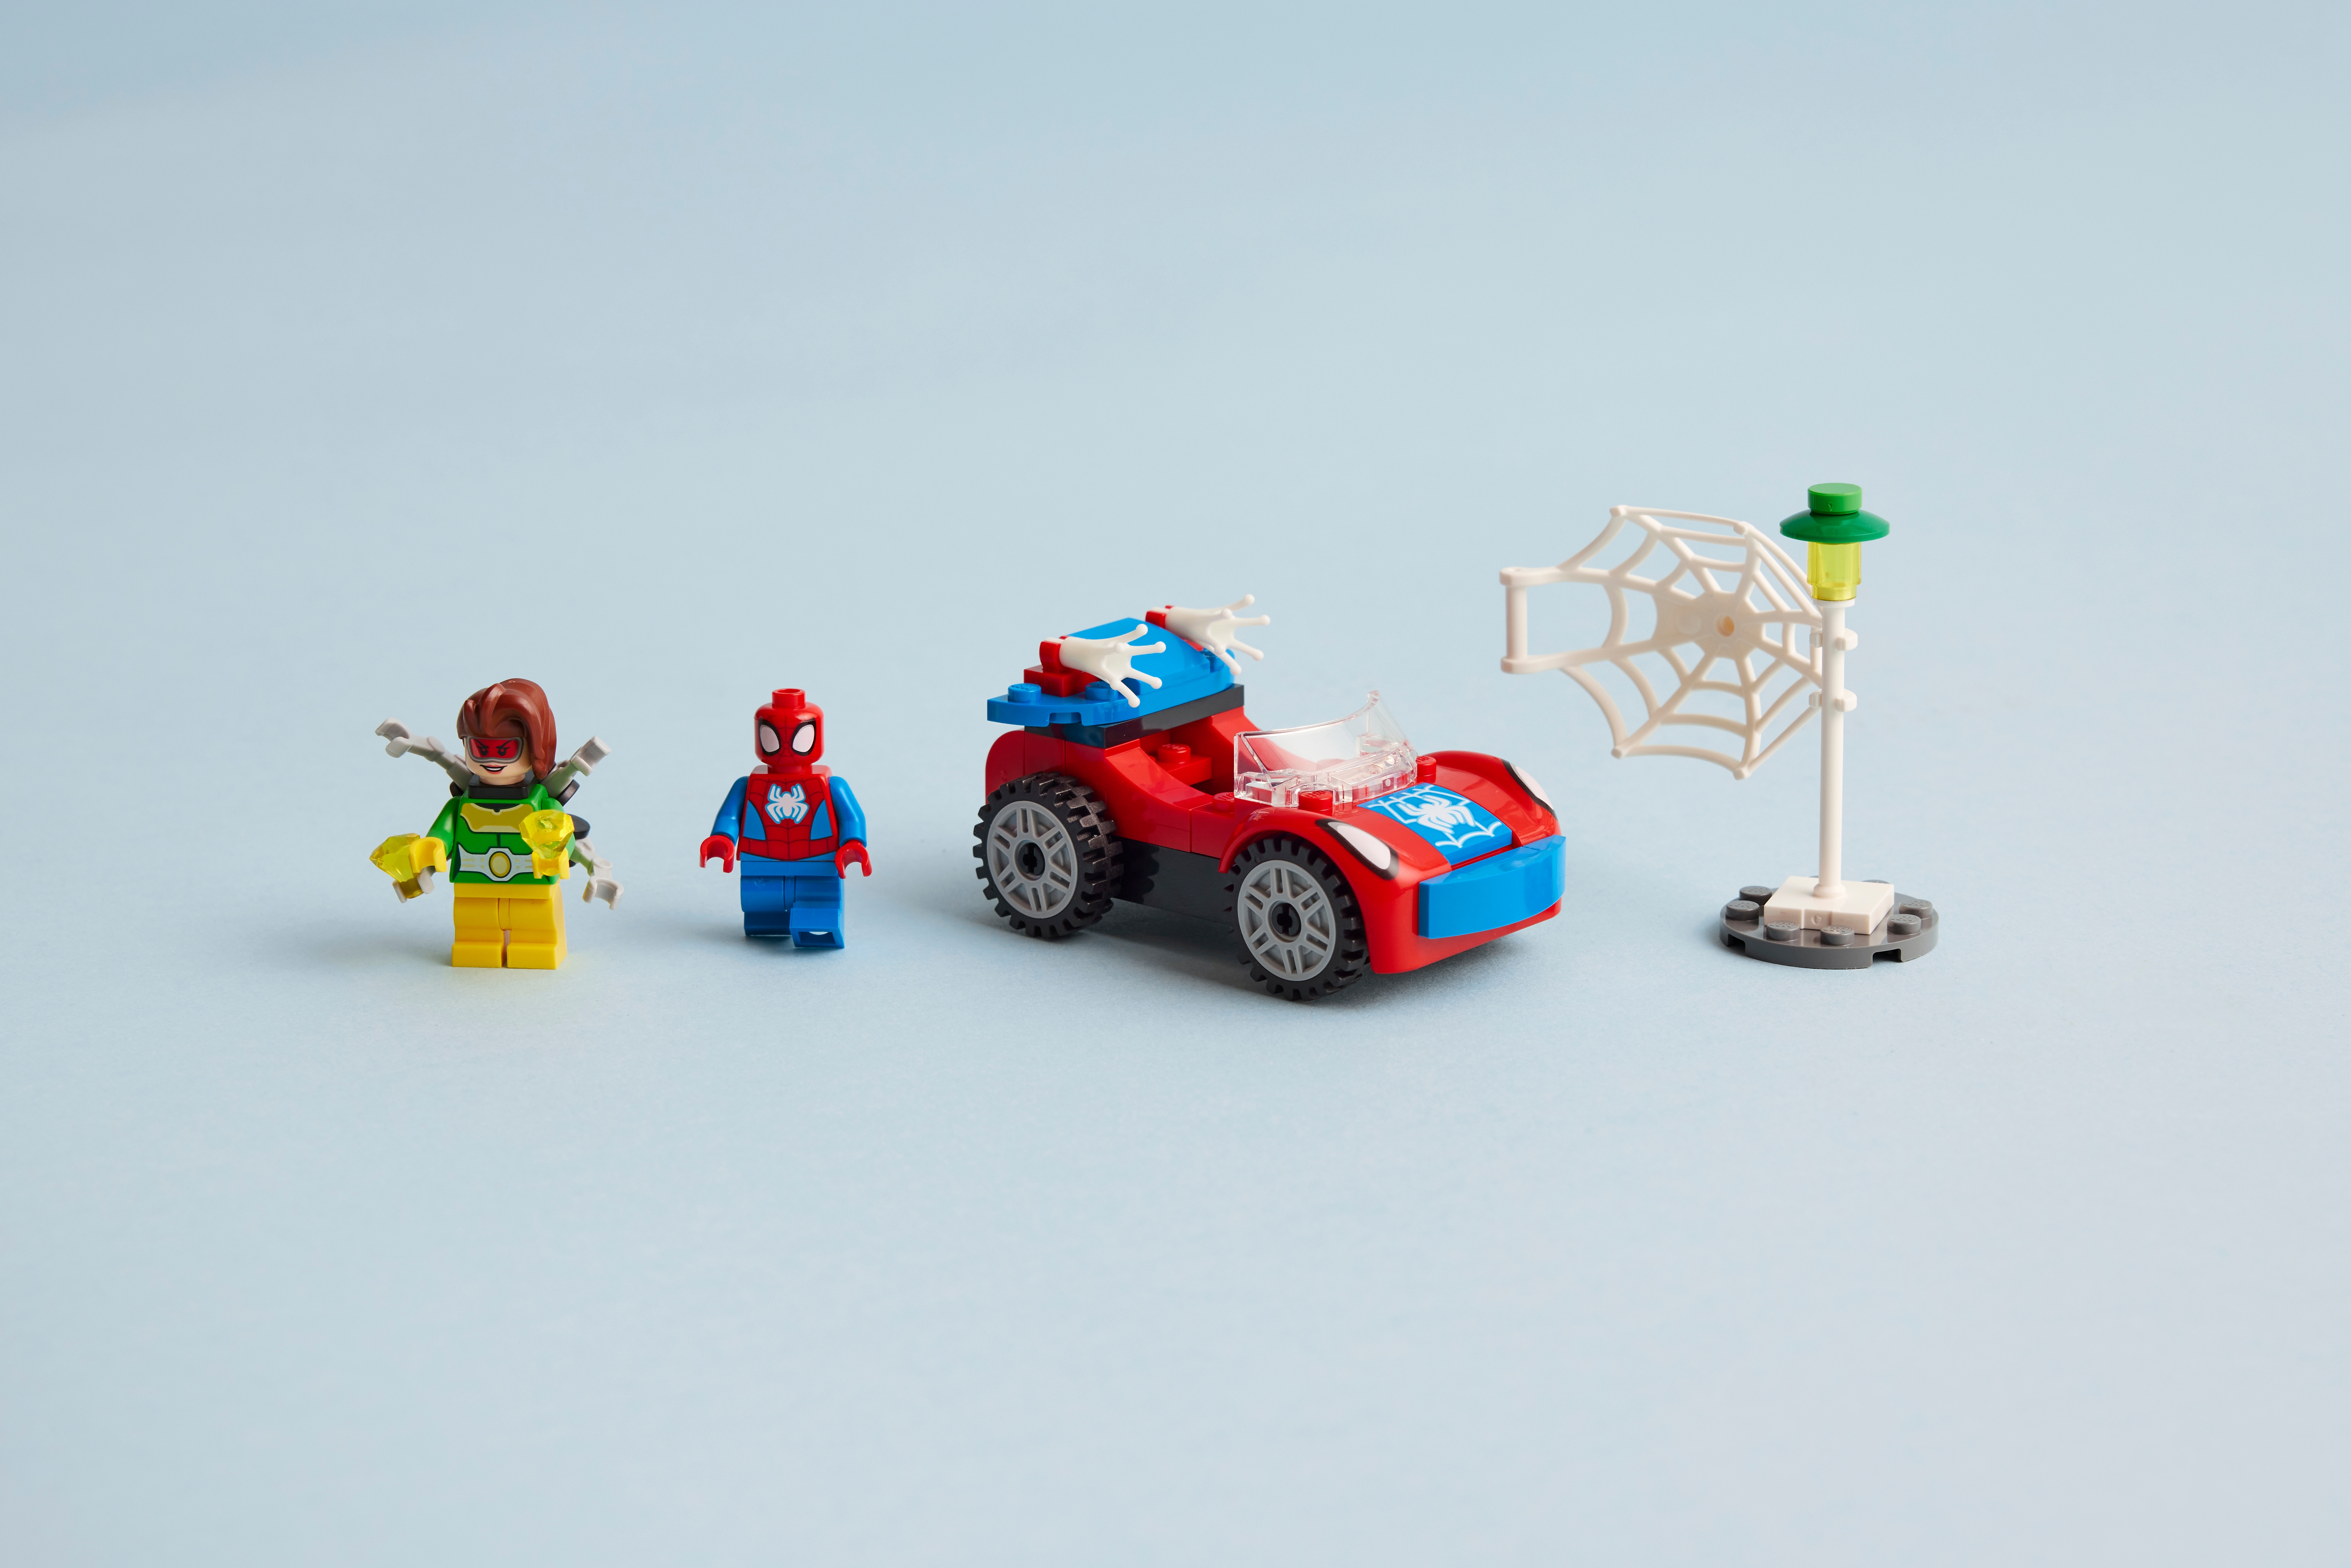 La voiture de Spider-Man et Docteur Octopus - Jeux de construction